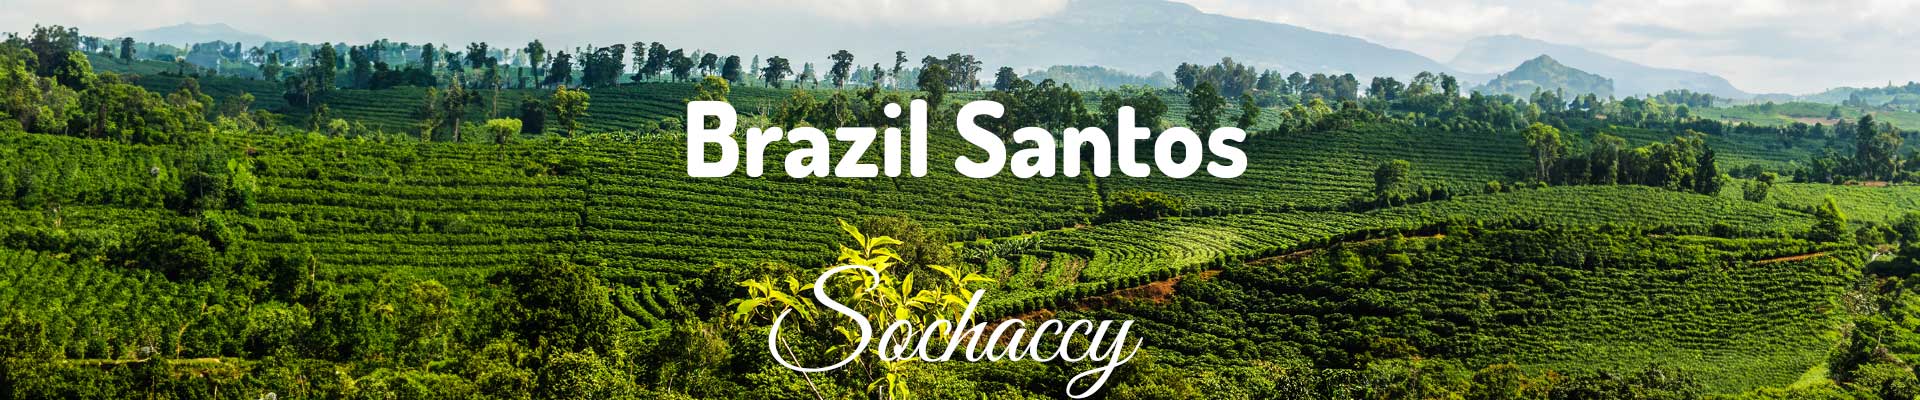 Kawa Brazylia Santos Sochaccy